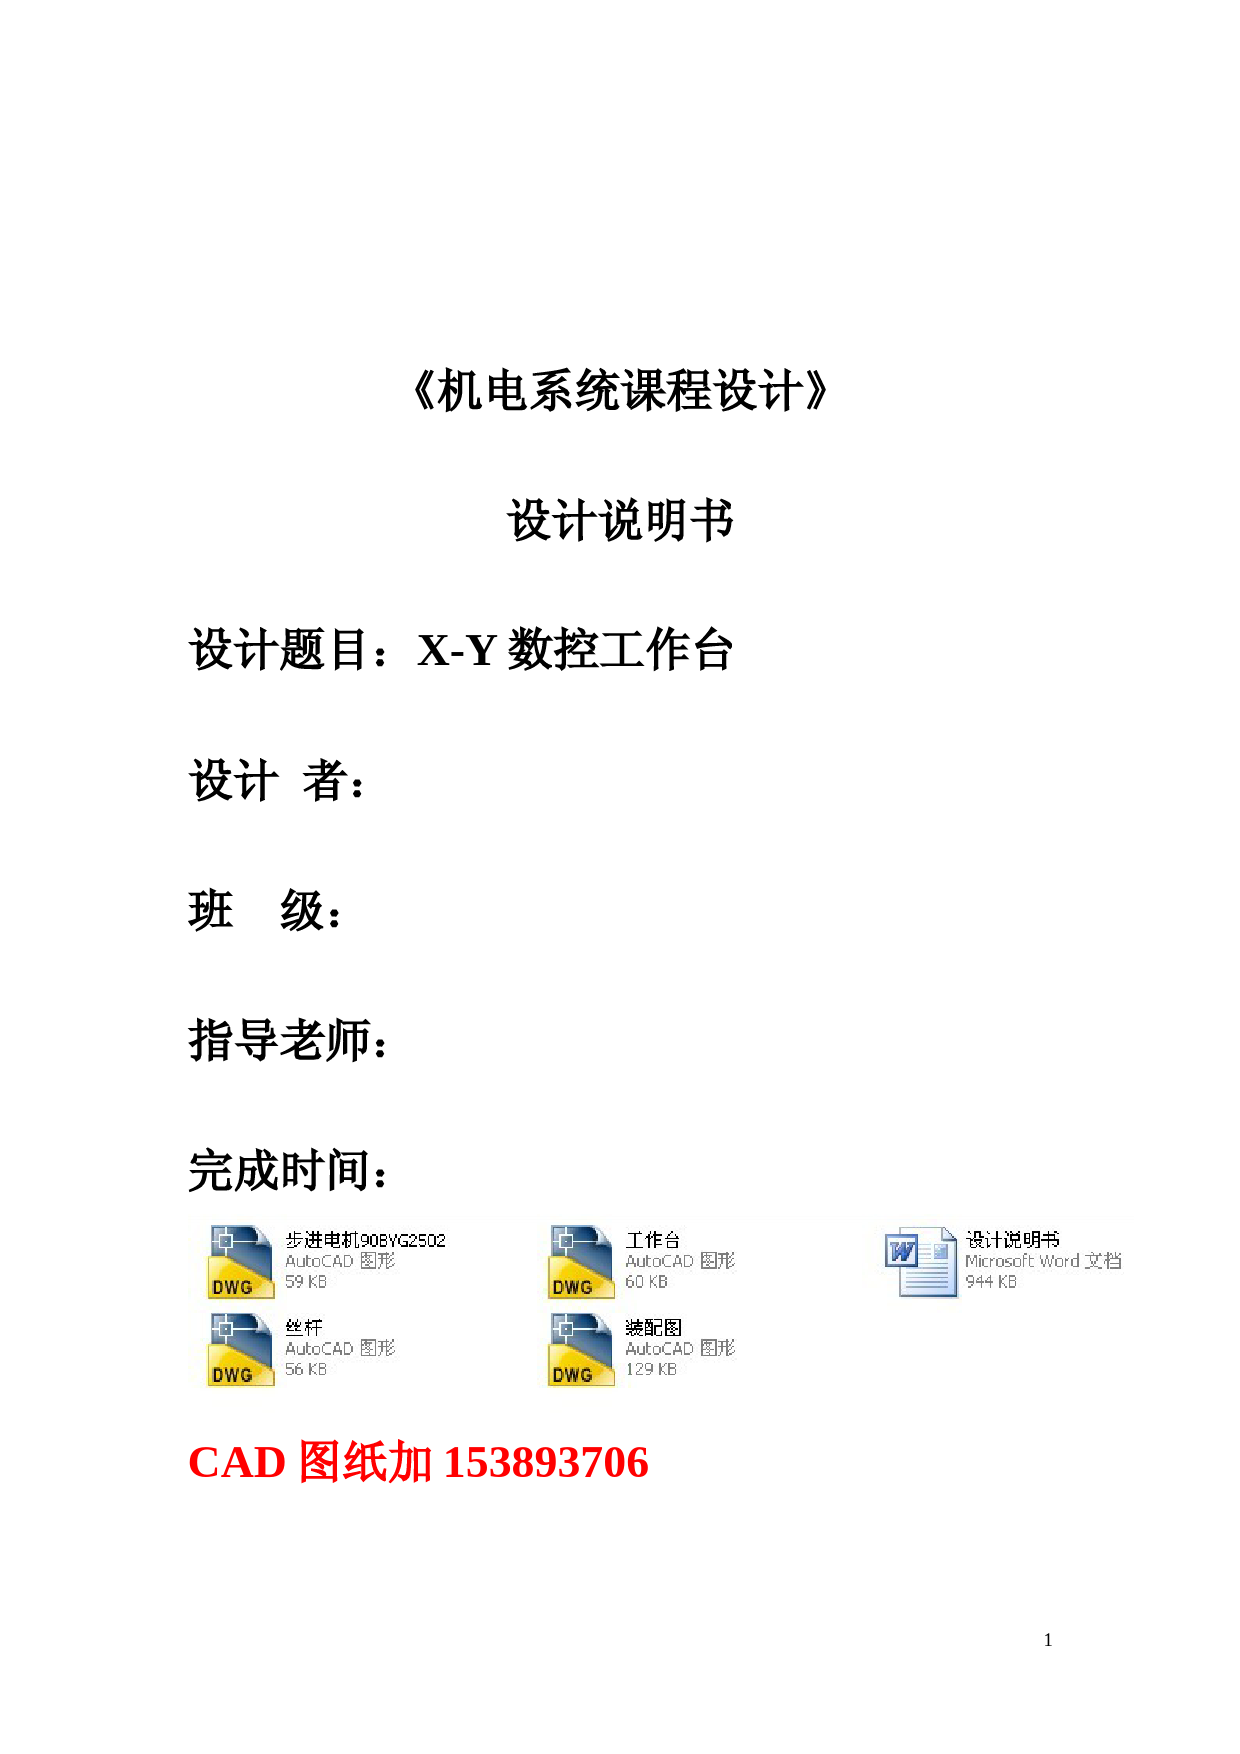 机电系统课程设计-X-Y水平数控滑台机电系统设计(全套图纸)